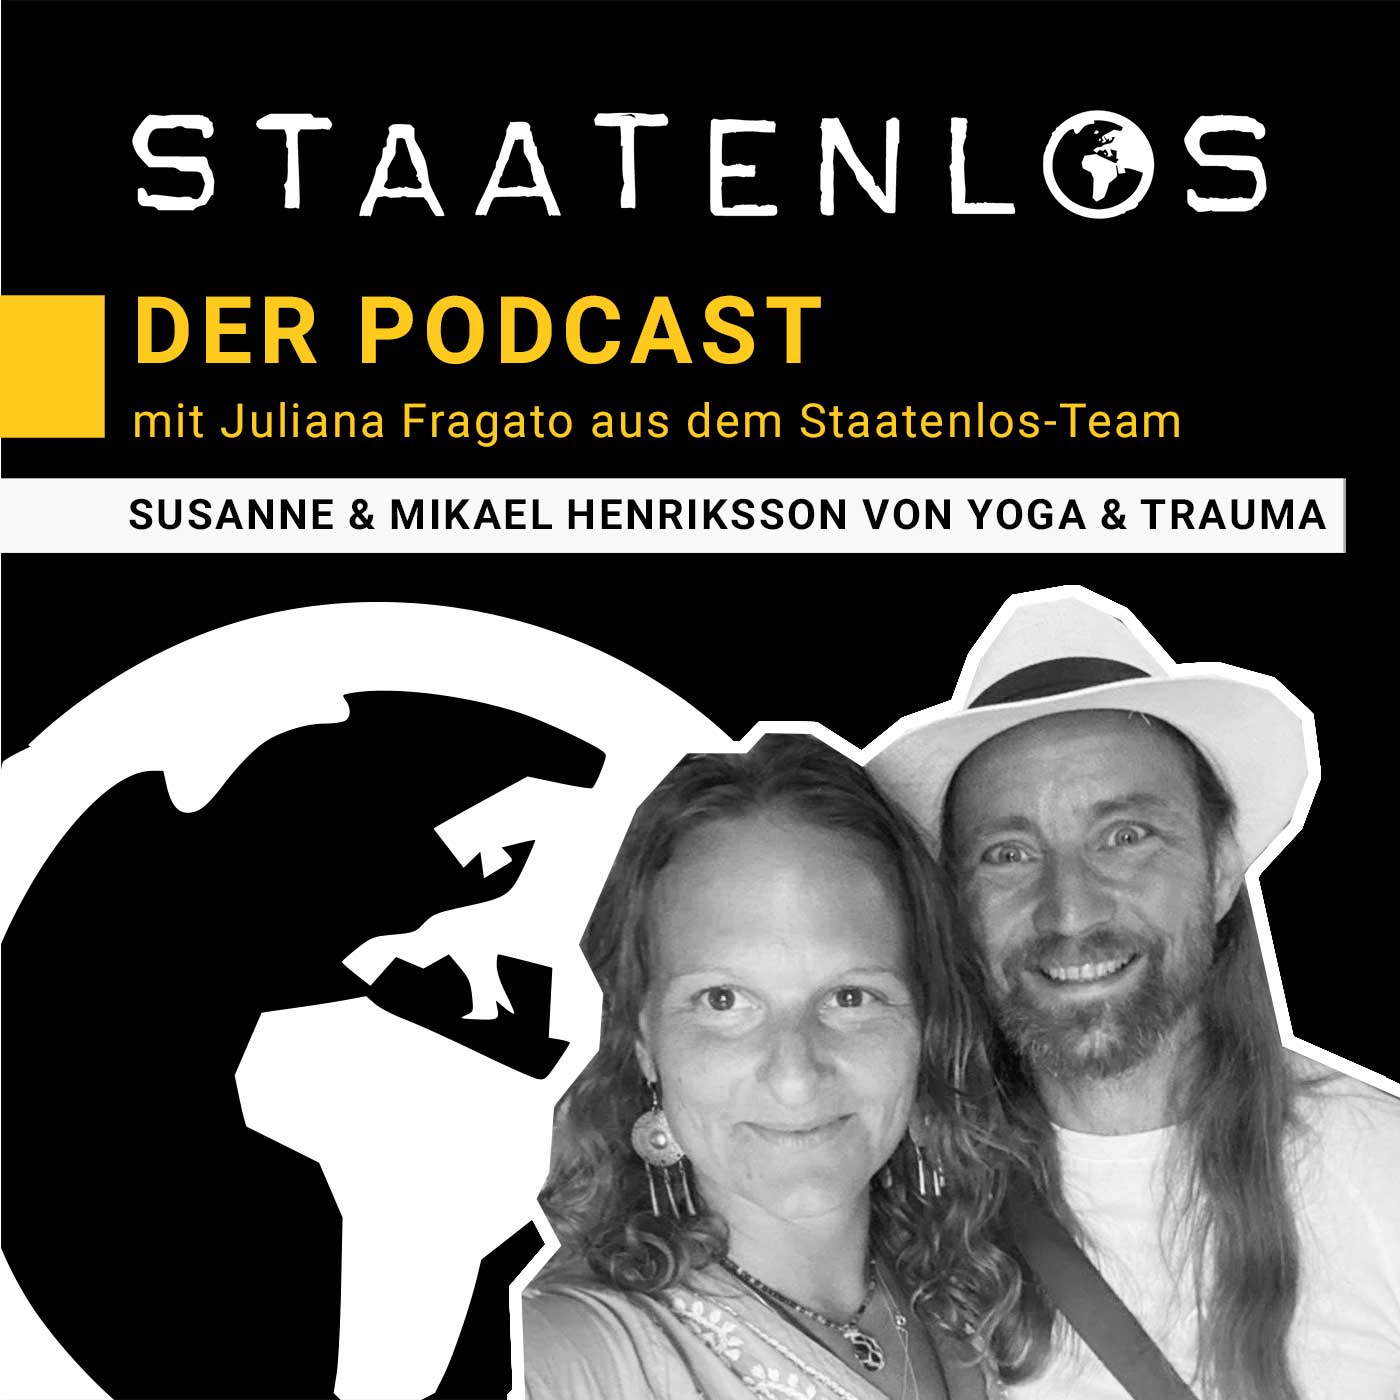 Interview mit Susanne und Mikael Henriksson